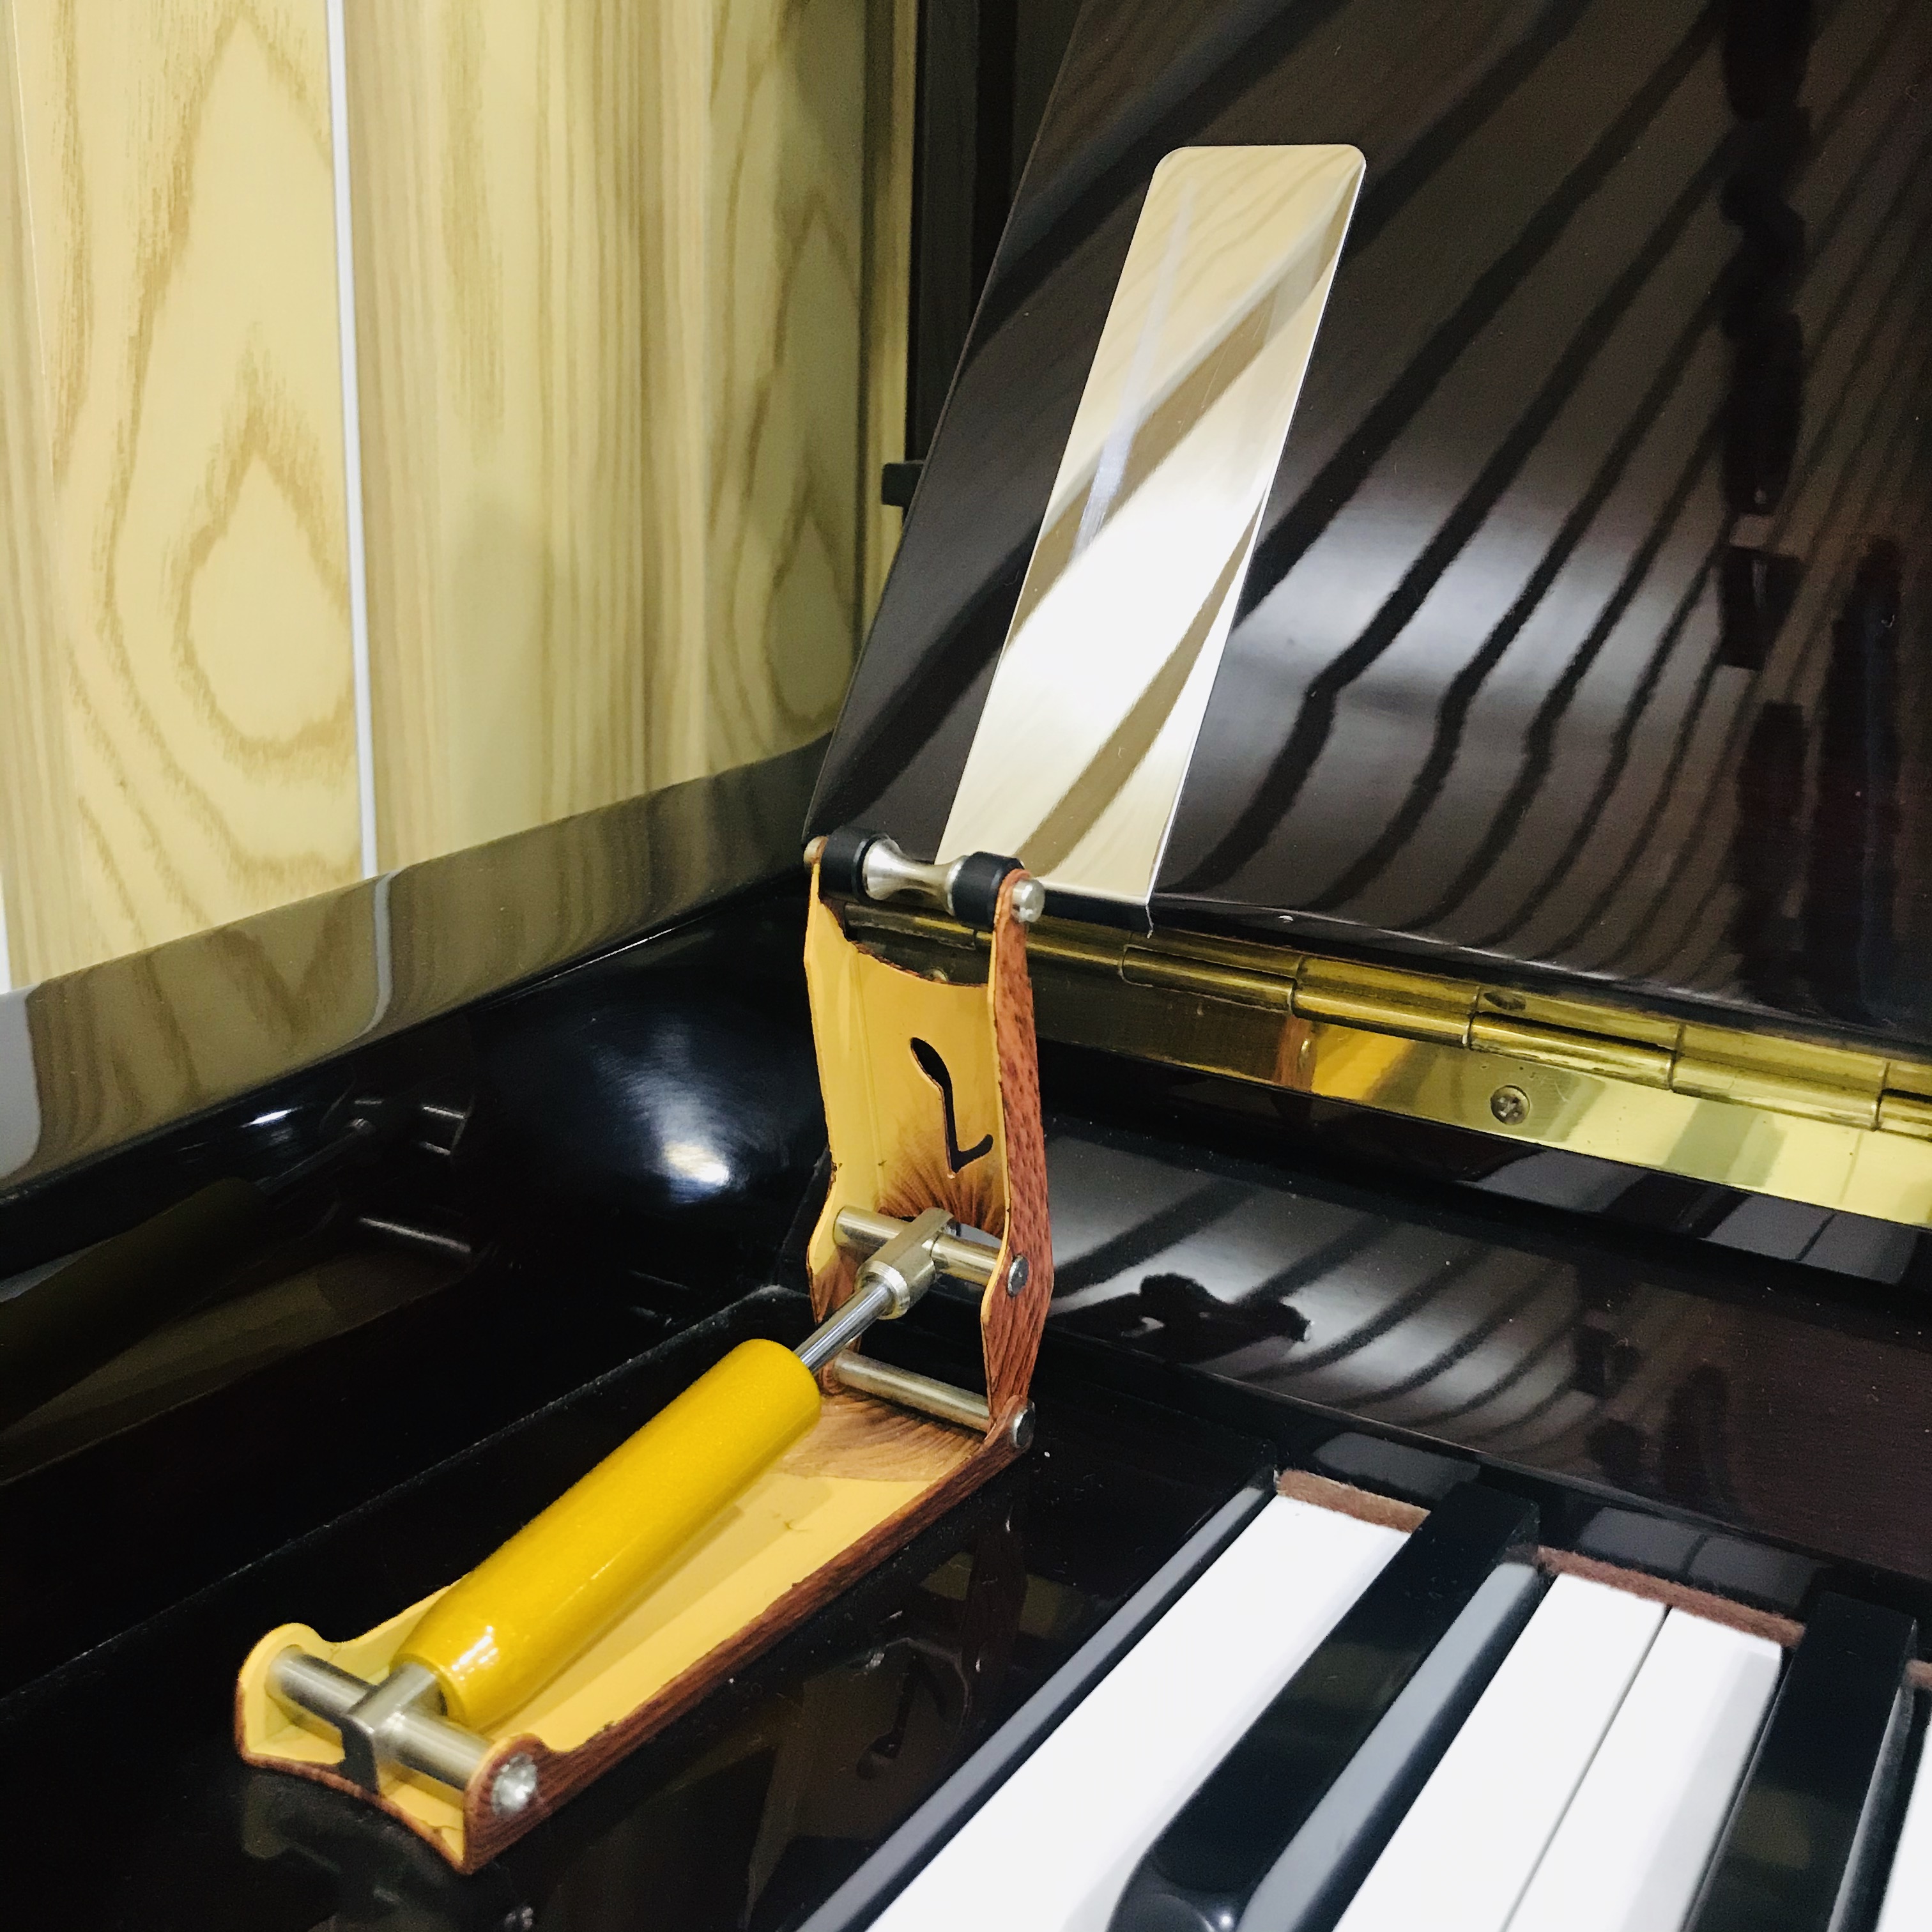 Thủy lực đỡ nắp đàn piano cơ - chống dập nắp đàn khi chơi